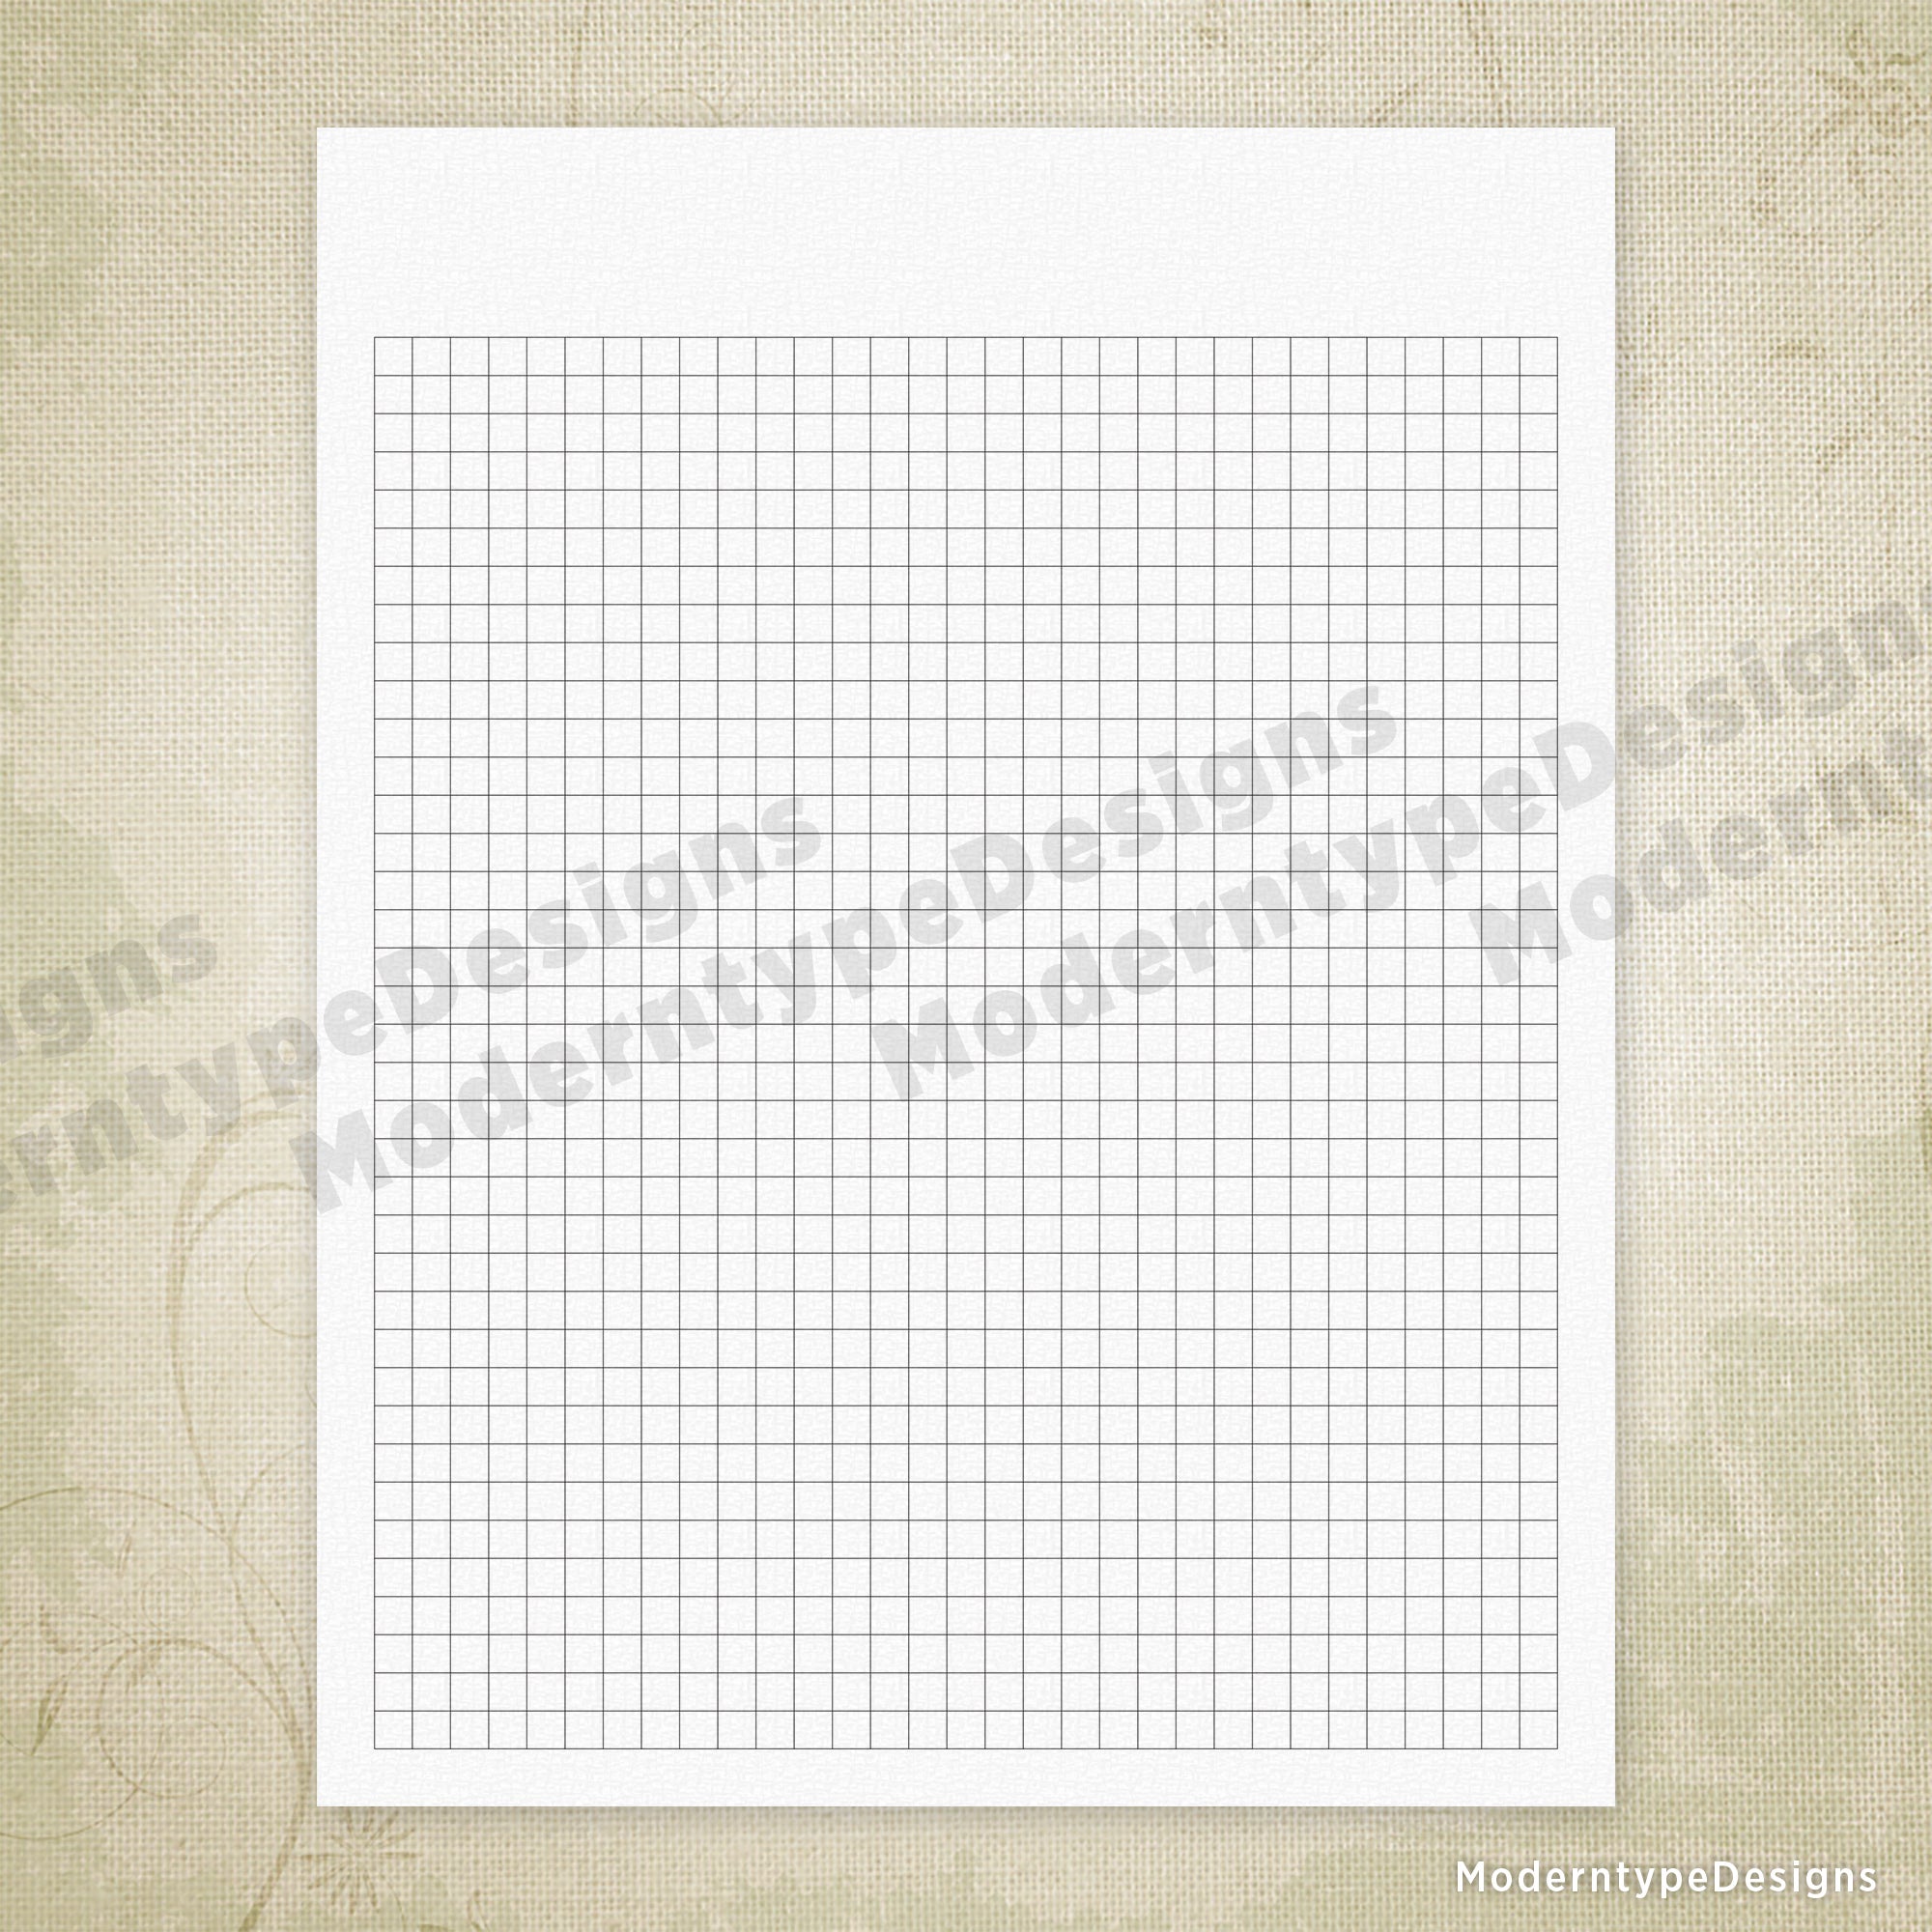 Regular Square Grid Digital Paper Printable